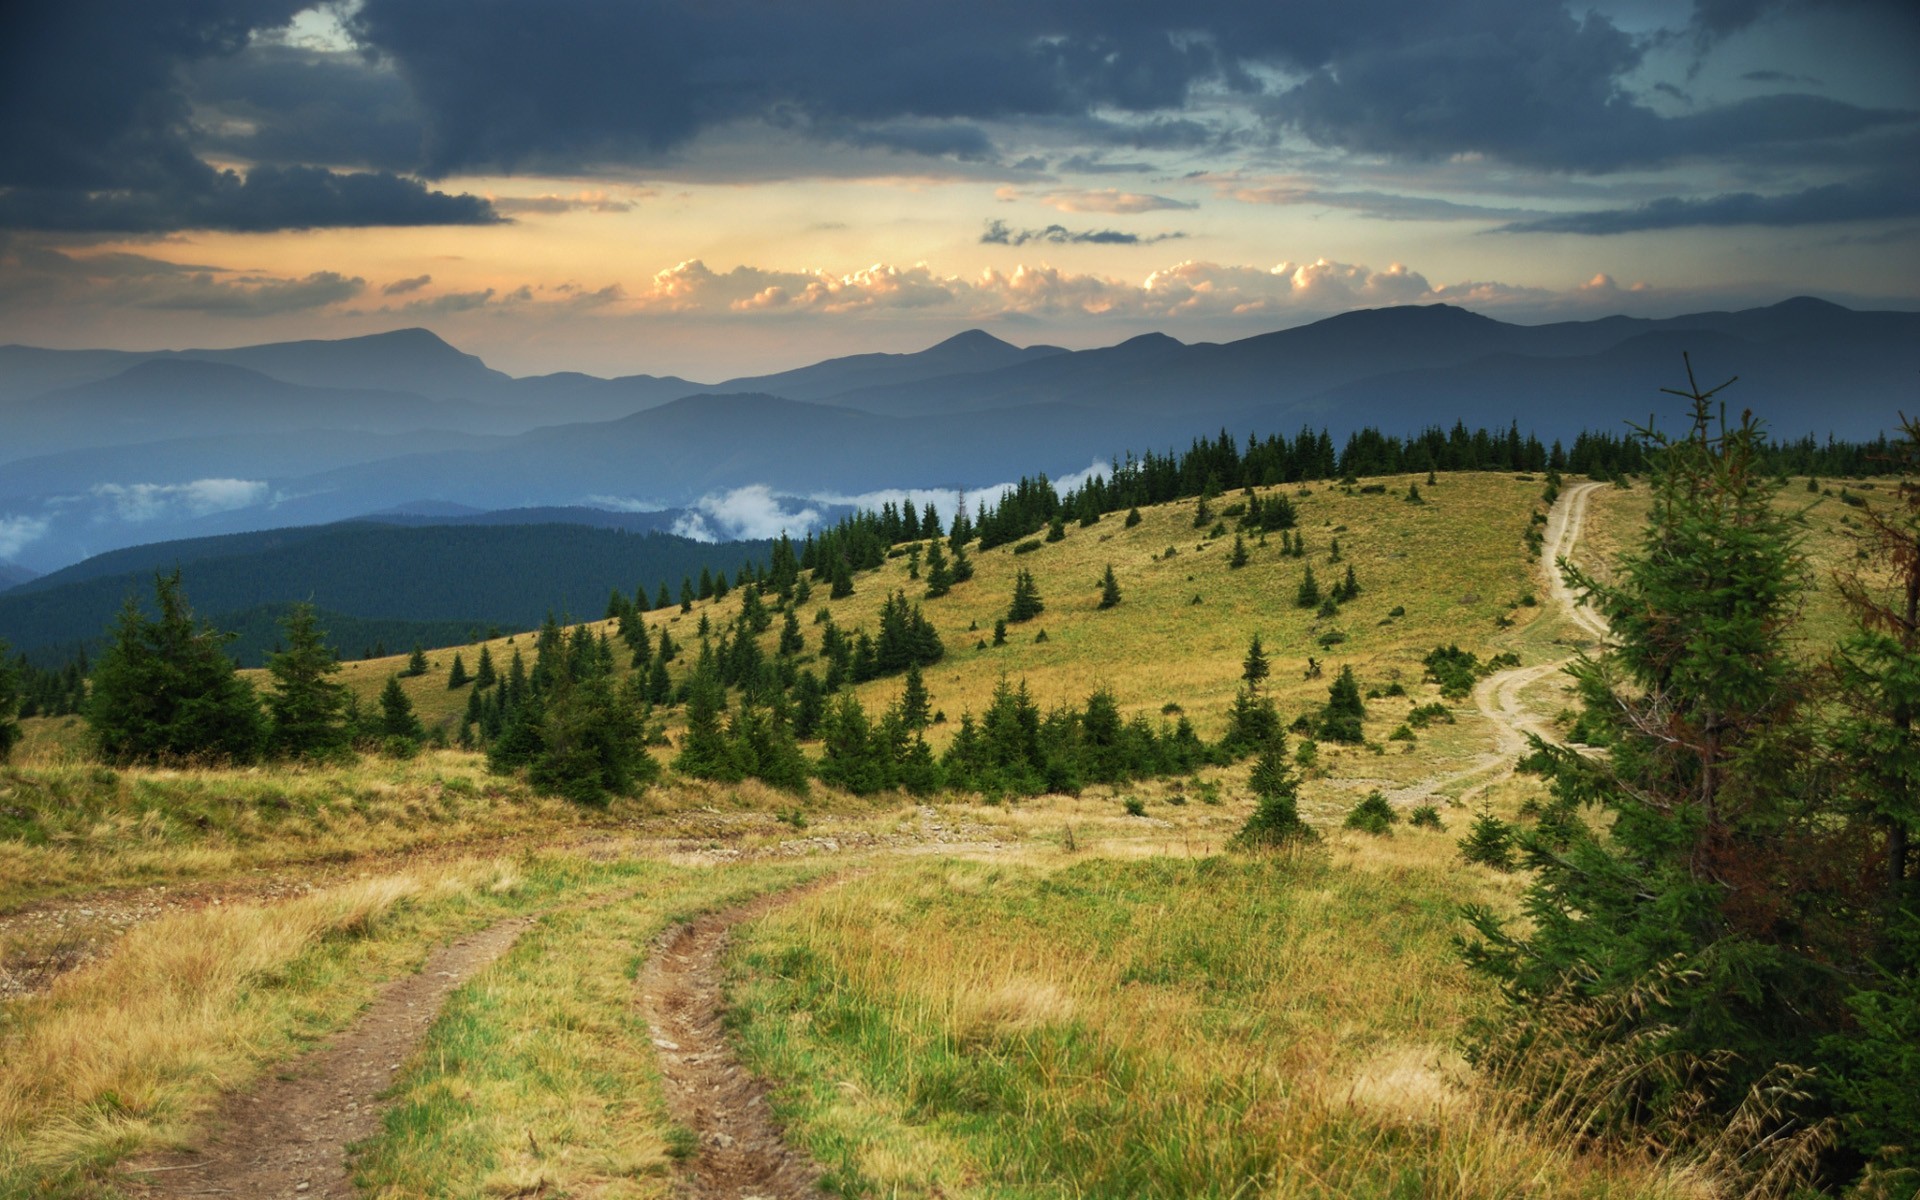 mountains, landscapes, nature - desktop wallpaper